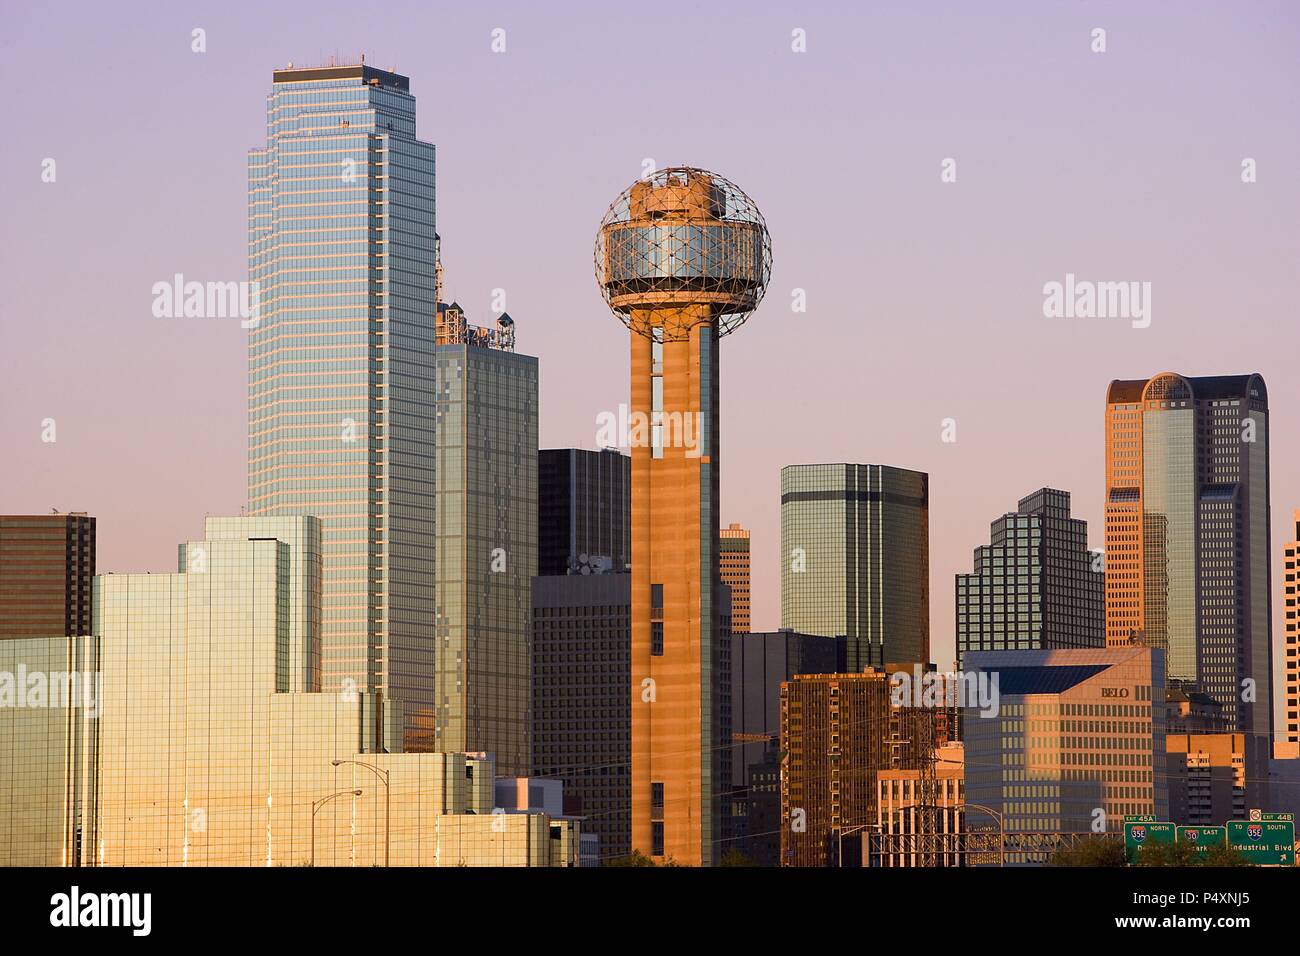 ESTADOS UNIDOS. DALLAS. Vista de algunos rascacielos de la ciudad, al atardecer. Estado de Texas. Stock Photo